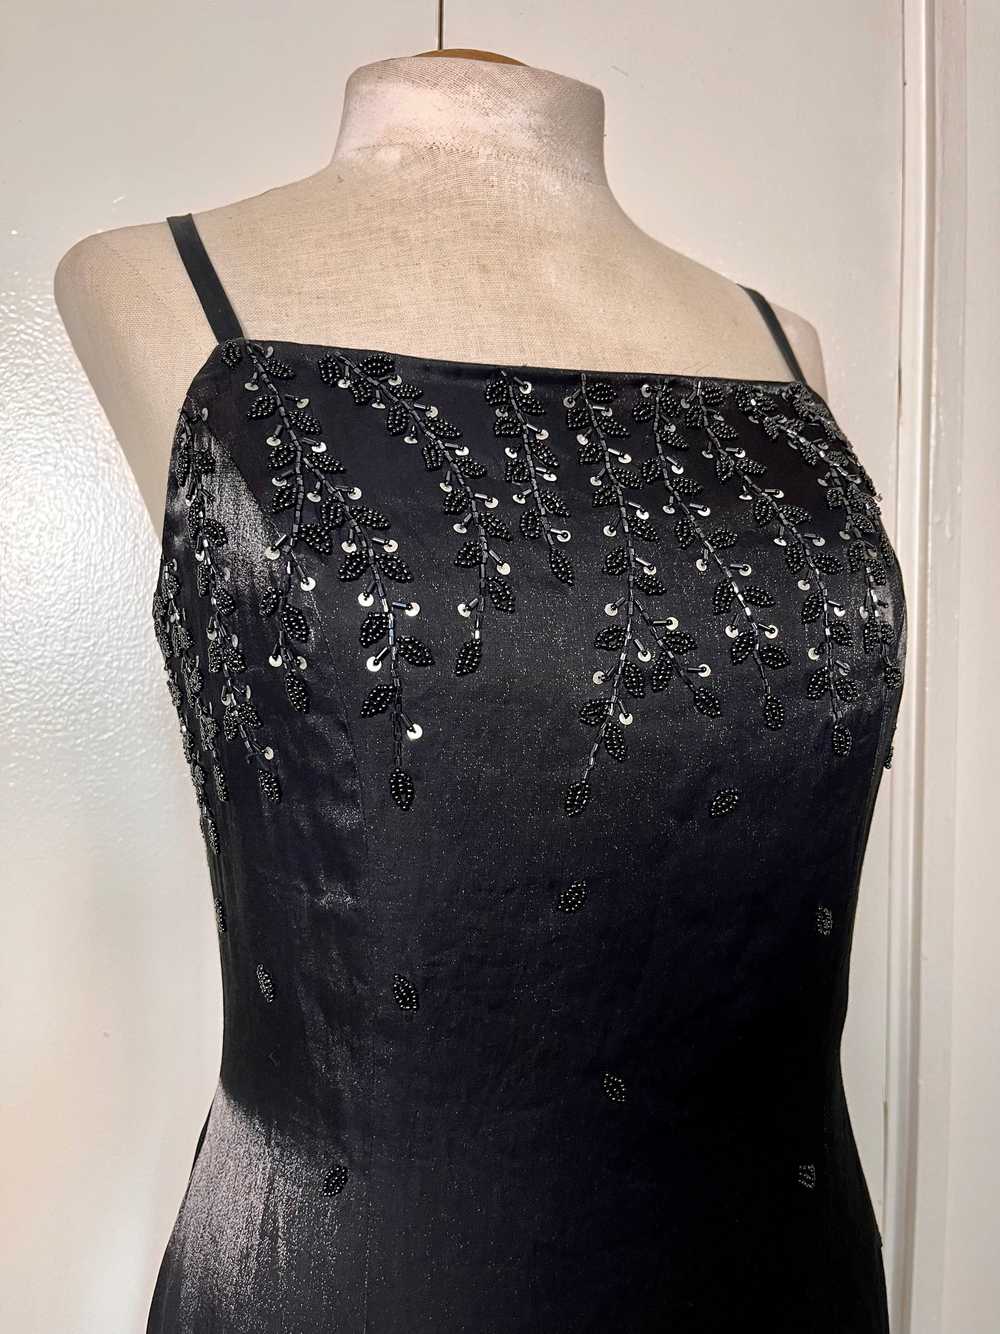 Vintage 1990's "Cache" Black Sequin Maxi Dress - image 8